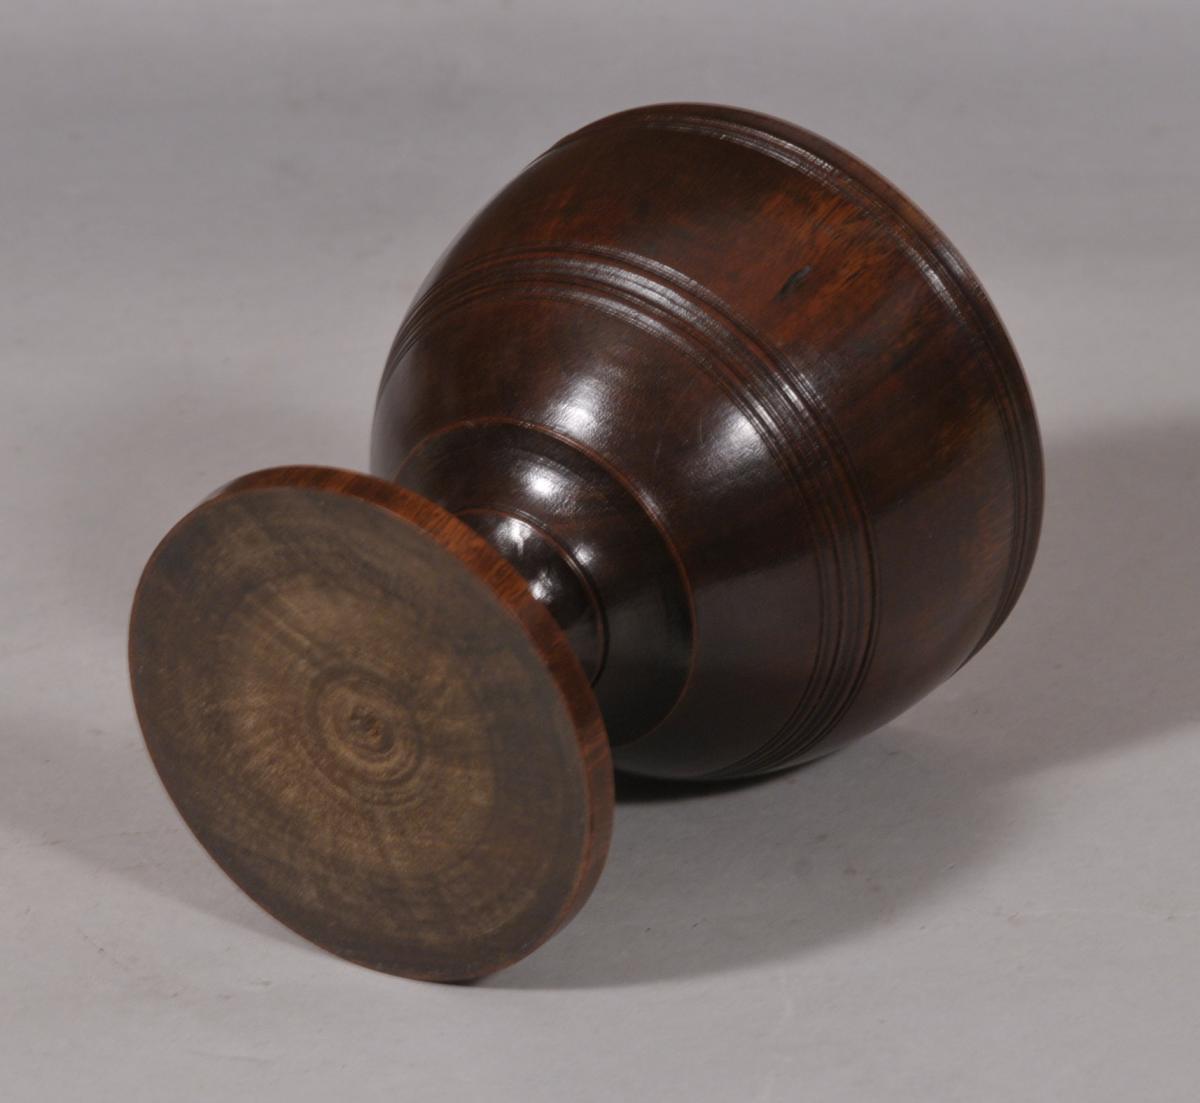 S/5866 Antique Treen 18th Century Laburnum Wood Goblet